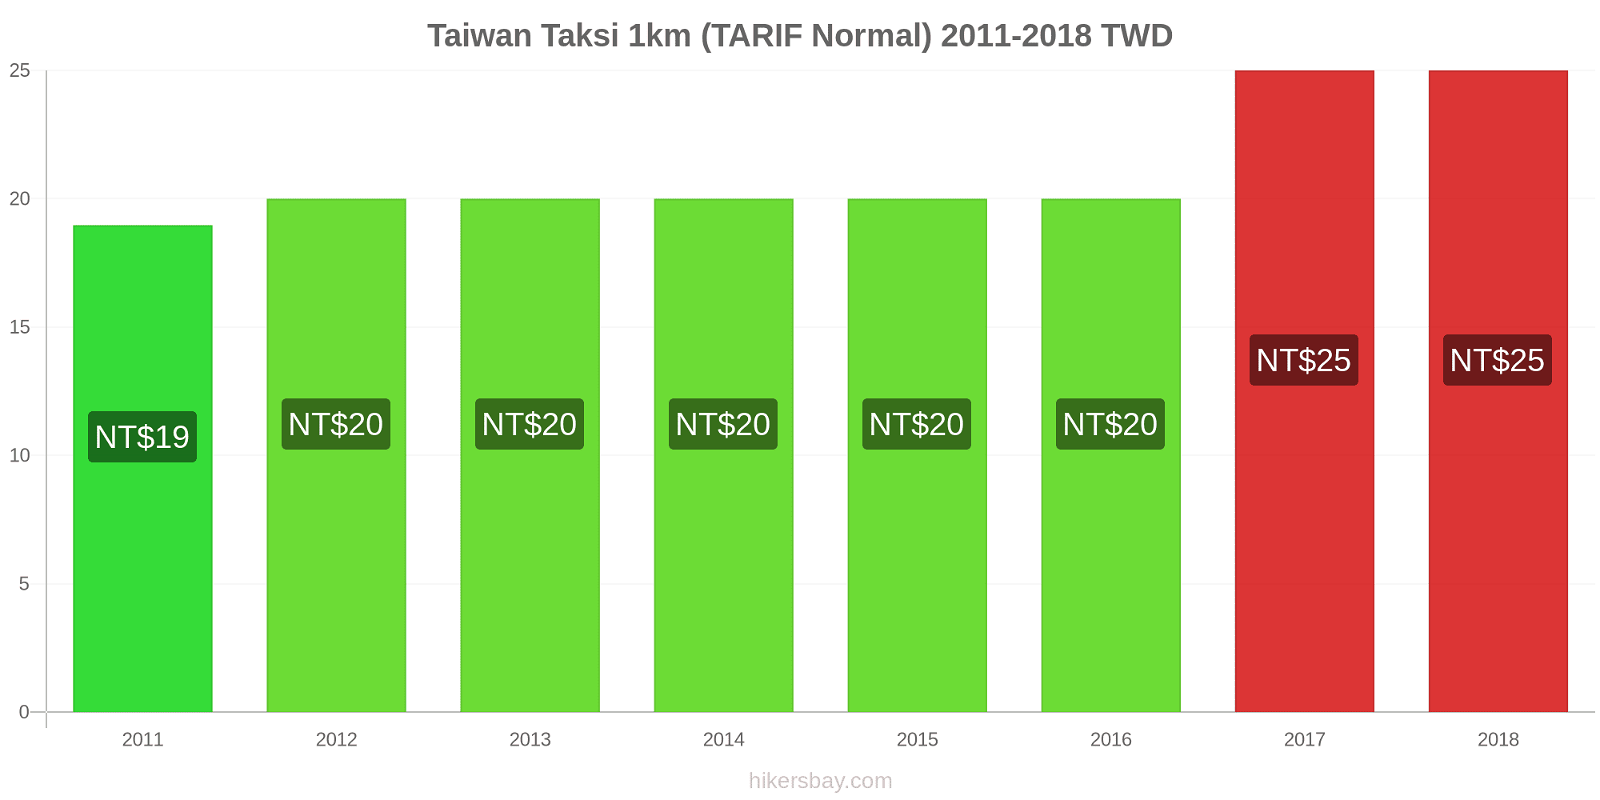 Taiwan perubahan harga Taksi 1km (Tarif Normal) hikersbay.com